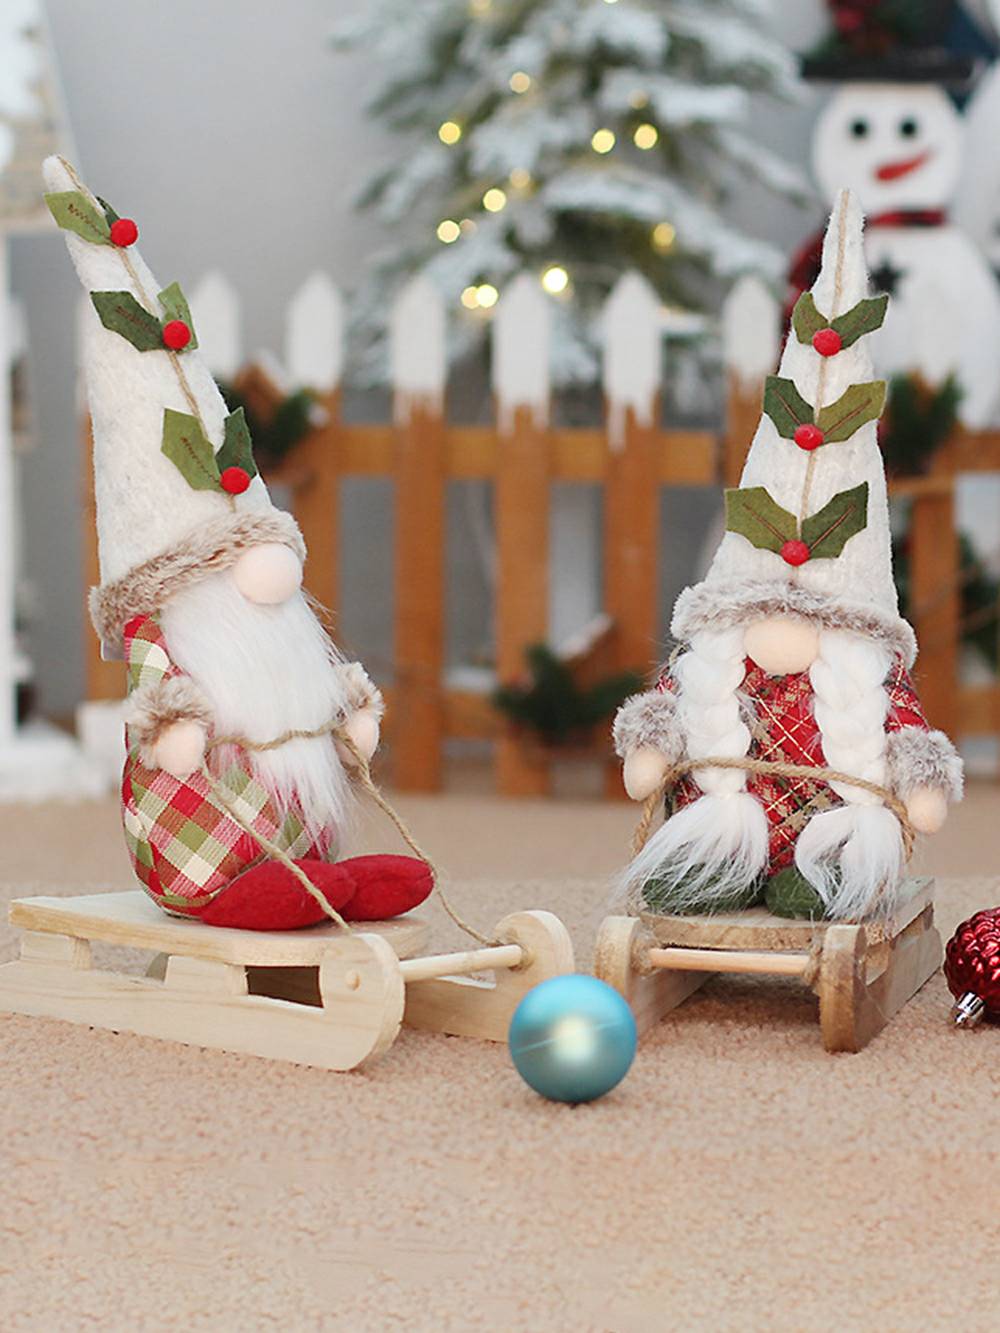 赤いチェック柄のクリスマスツリー ノームのぬいぐるみ 座りポーズと立ちポーズ付き